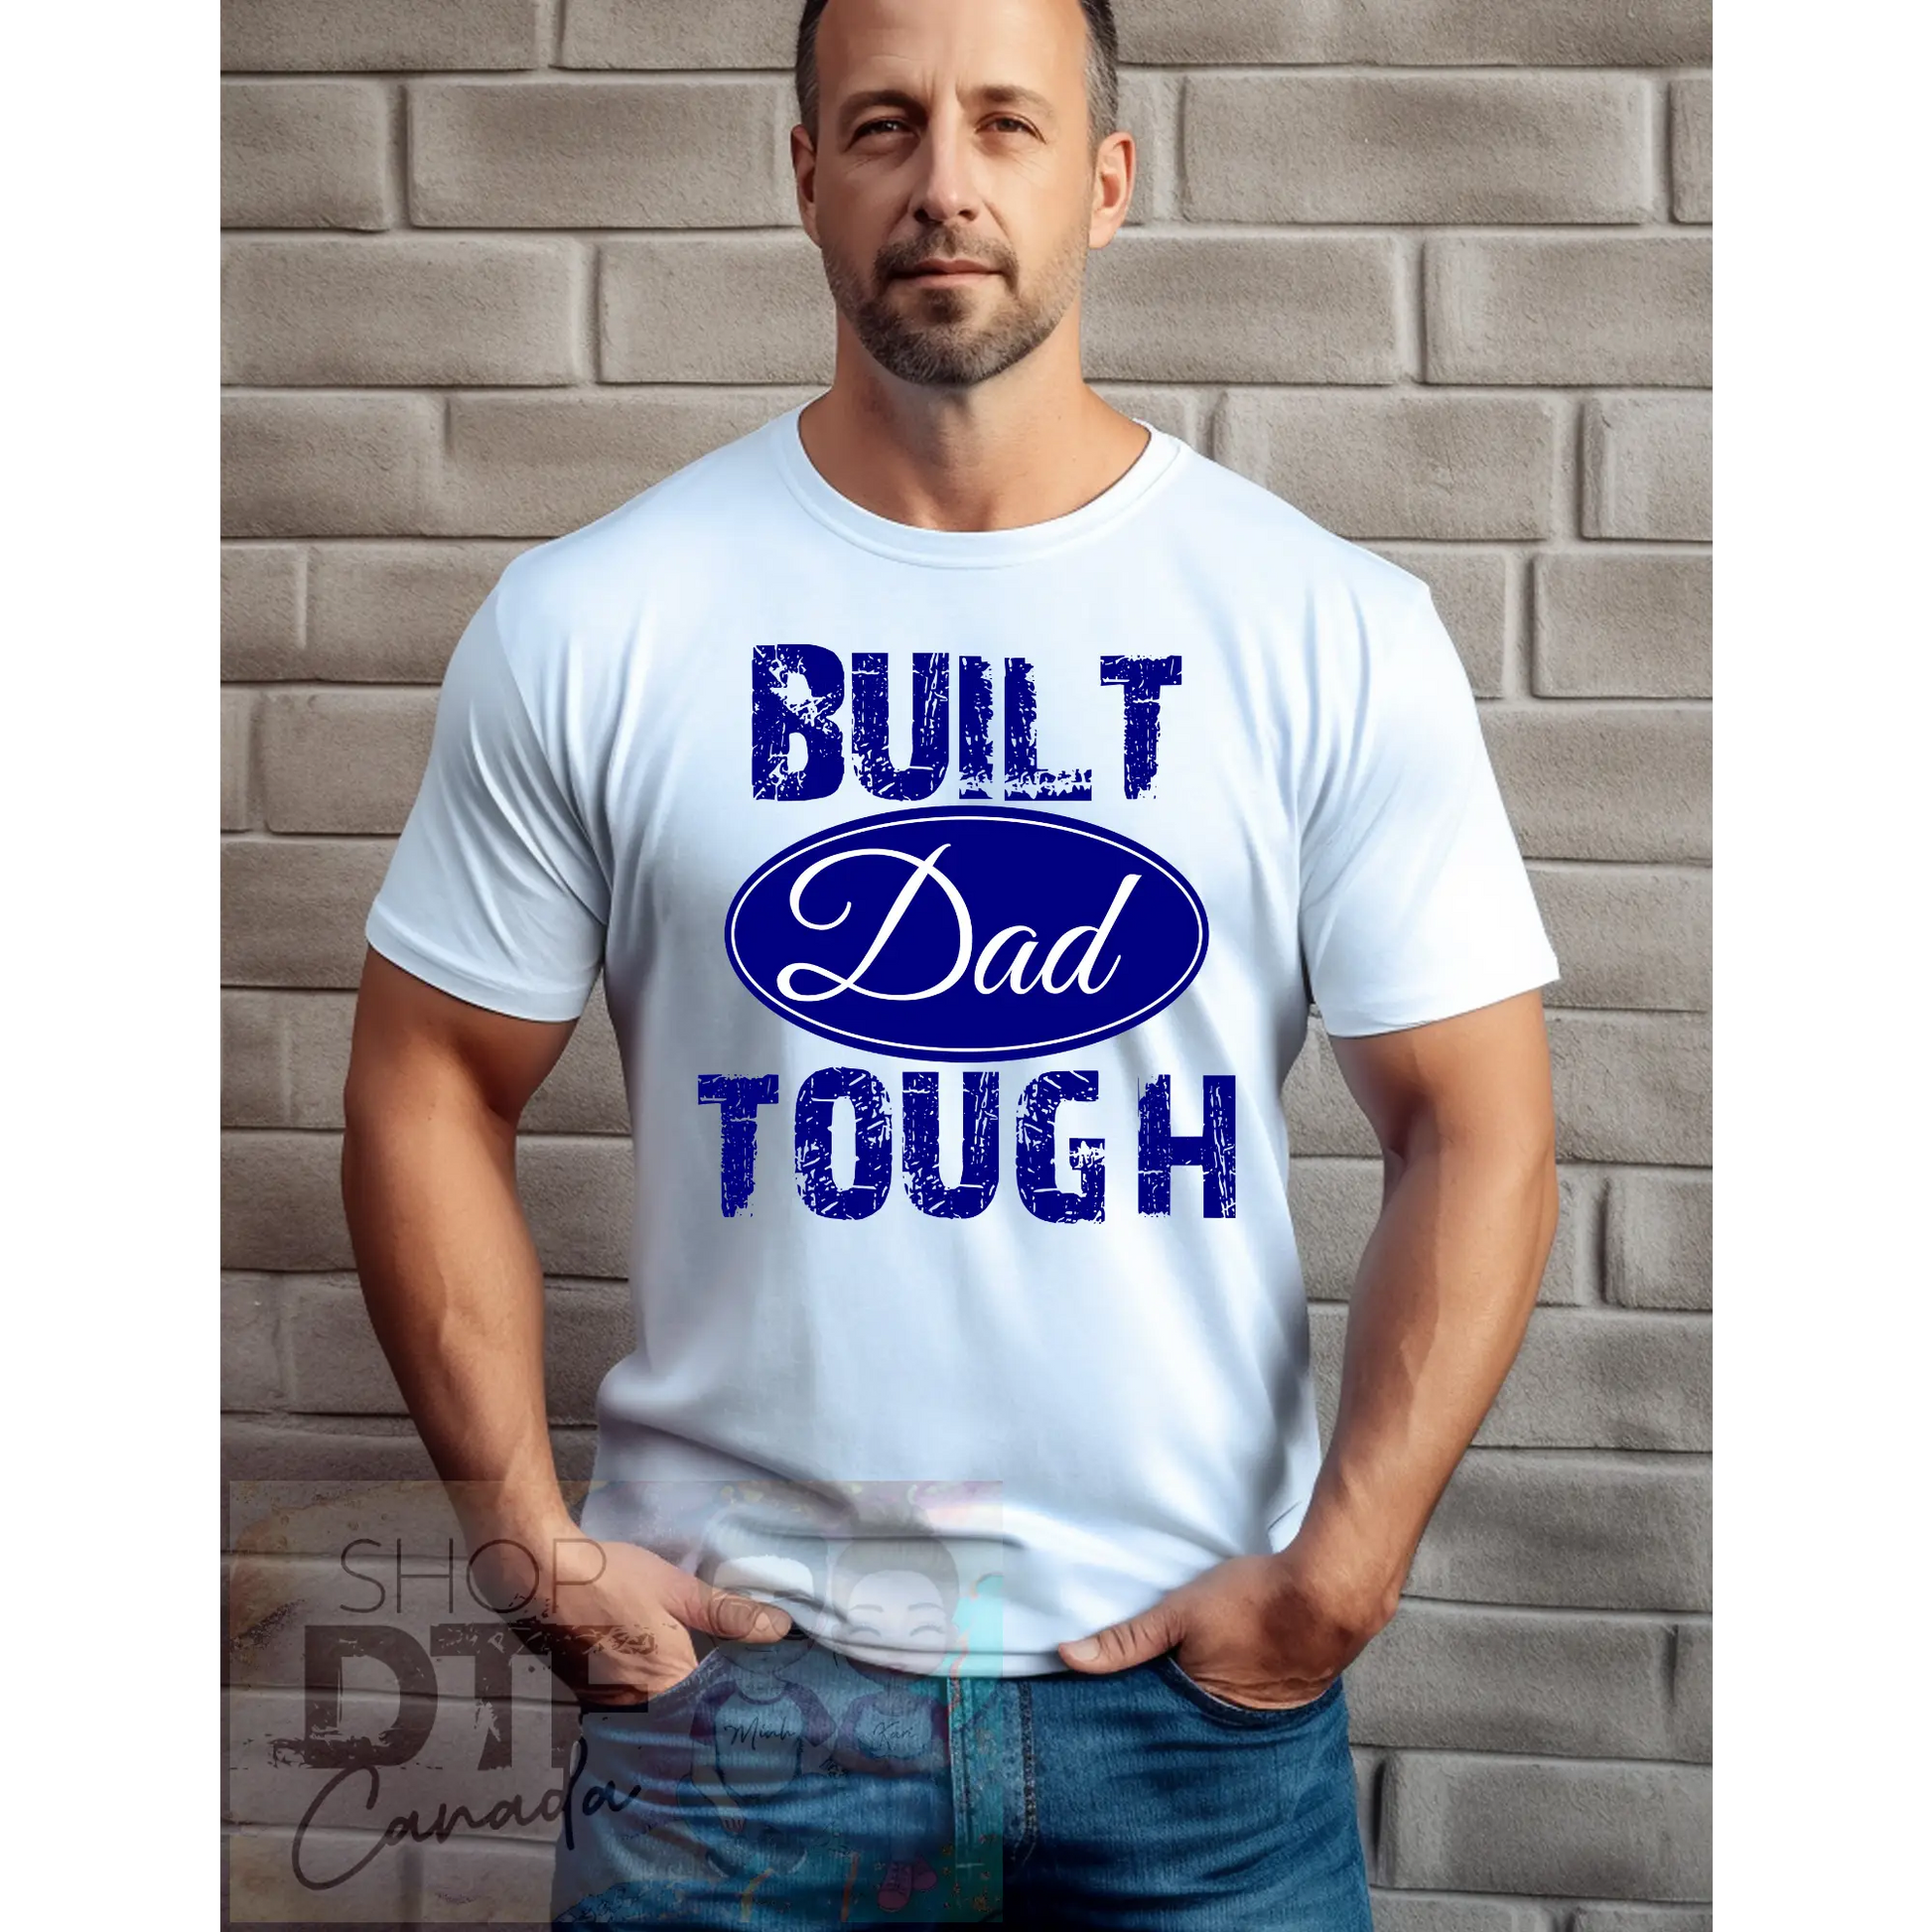 Dad - Built Dad Tough - Shirts & Tops